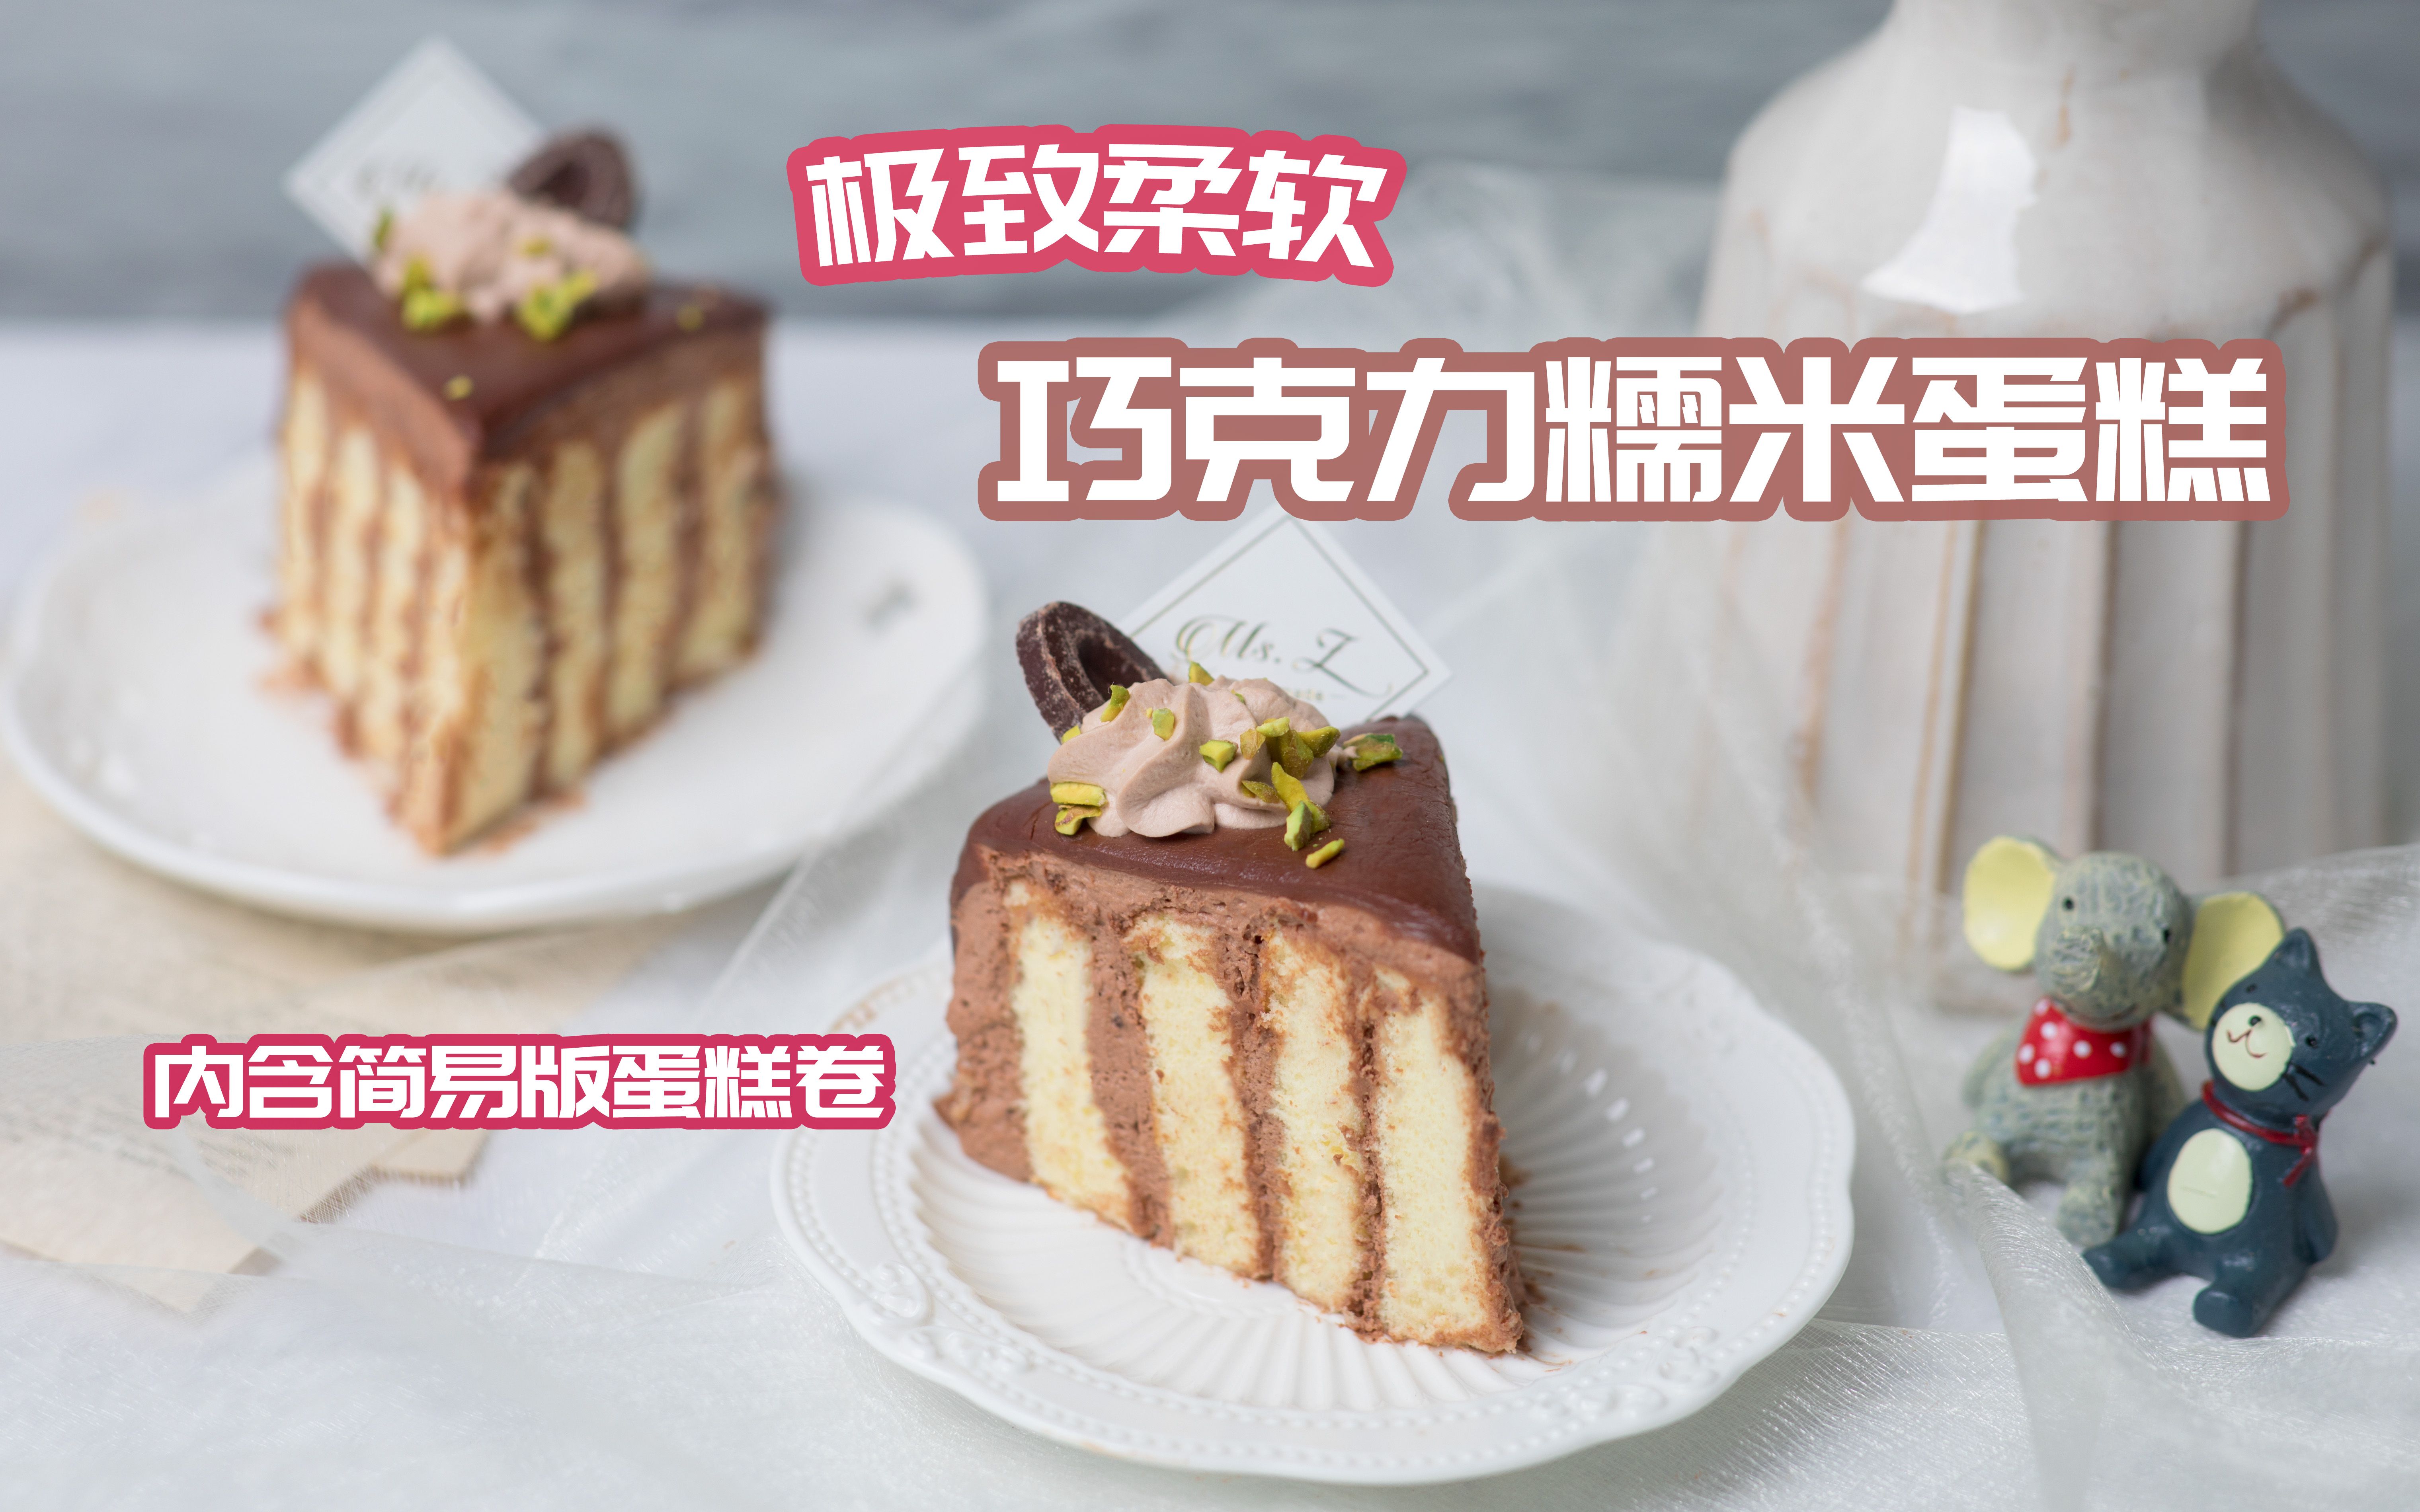 糯米蒸蛋糕怎么做_糯米蒸蛋糕的做法_GiGi食记_豆果美食